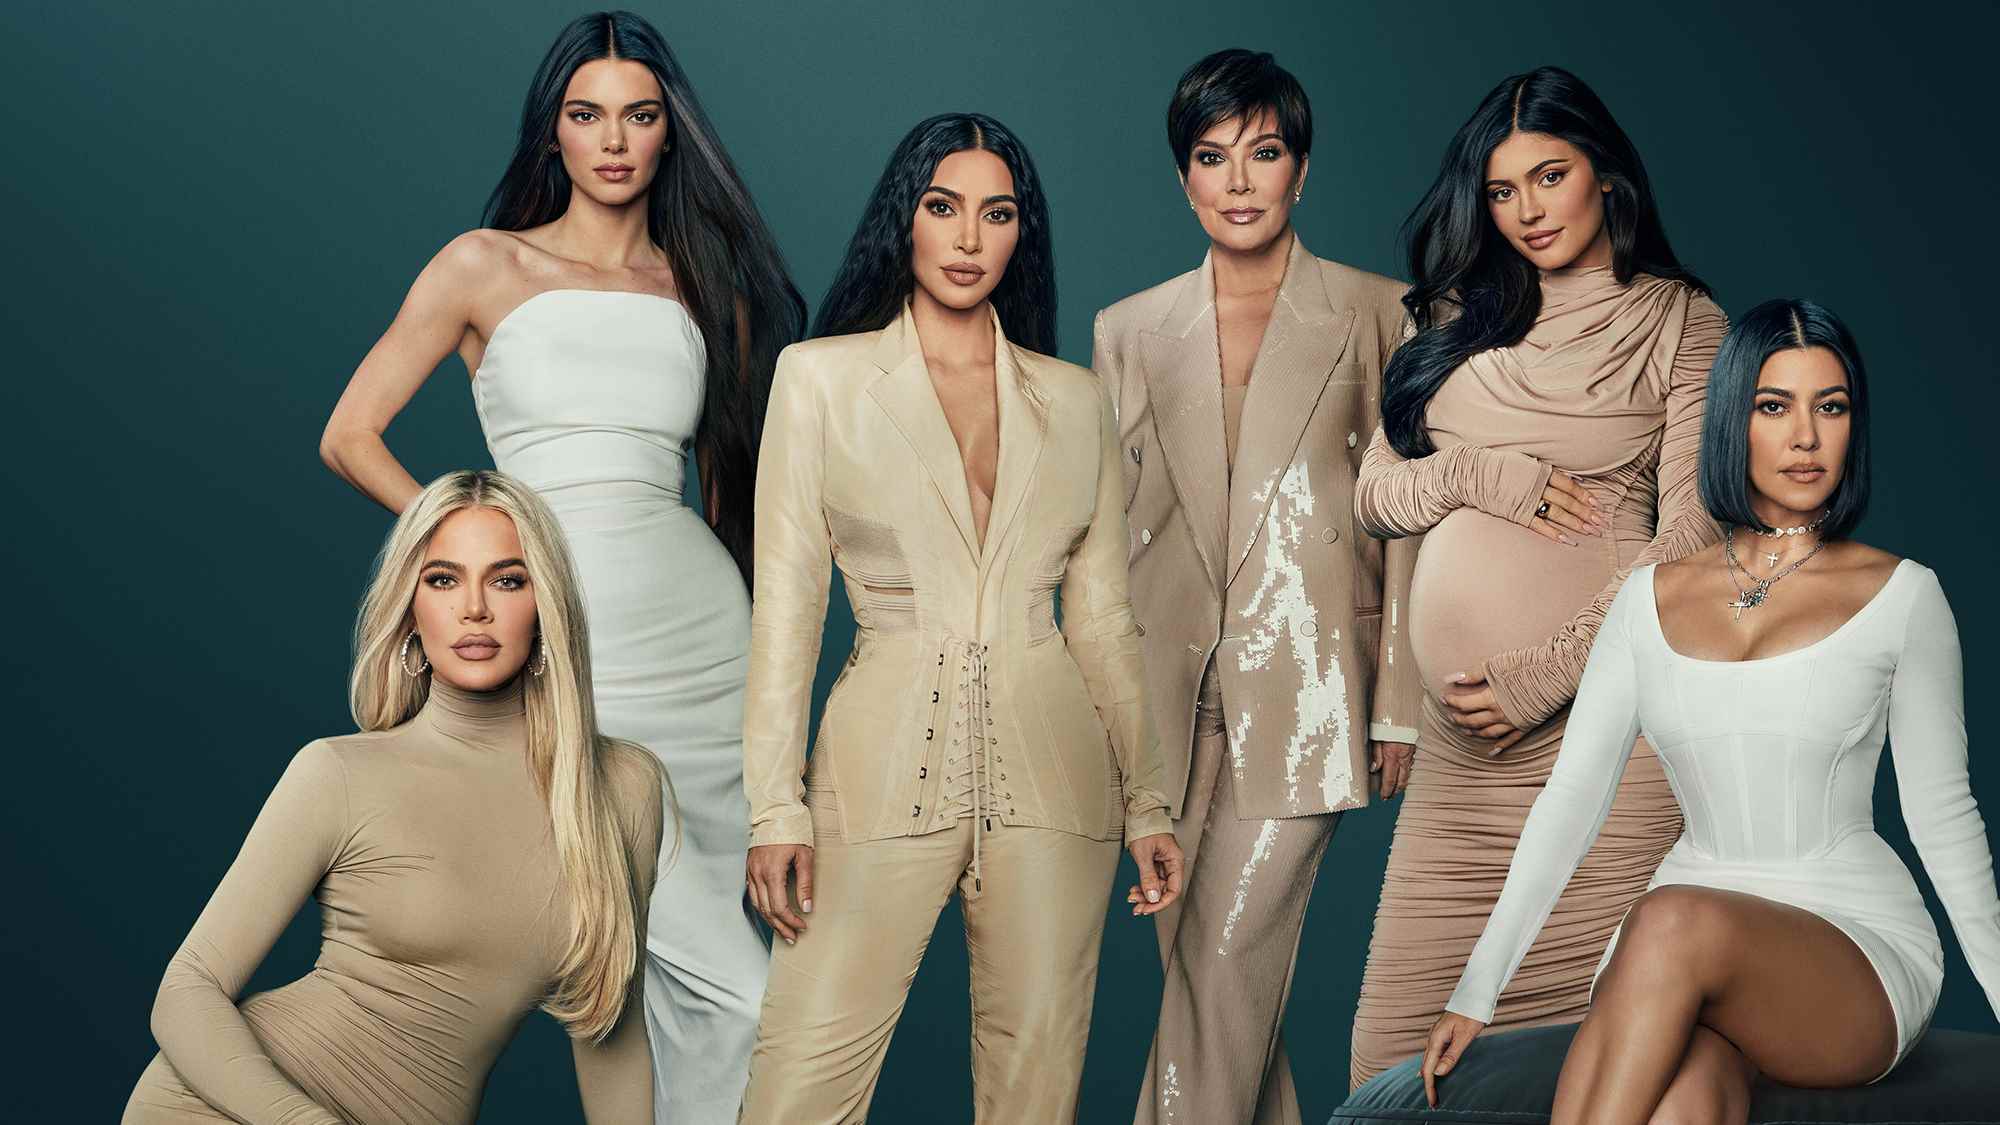 (Soldan Sağa) Khloé Kardashian, Kendall Jenner, Kim Kardashian, Kris Jenner, Kylie Jenner ve Kourtney Kardashian, The Kardashians için önemli sanat eserlerinde